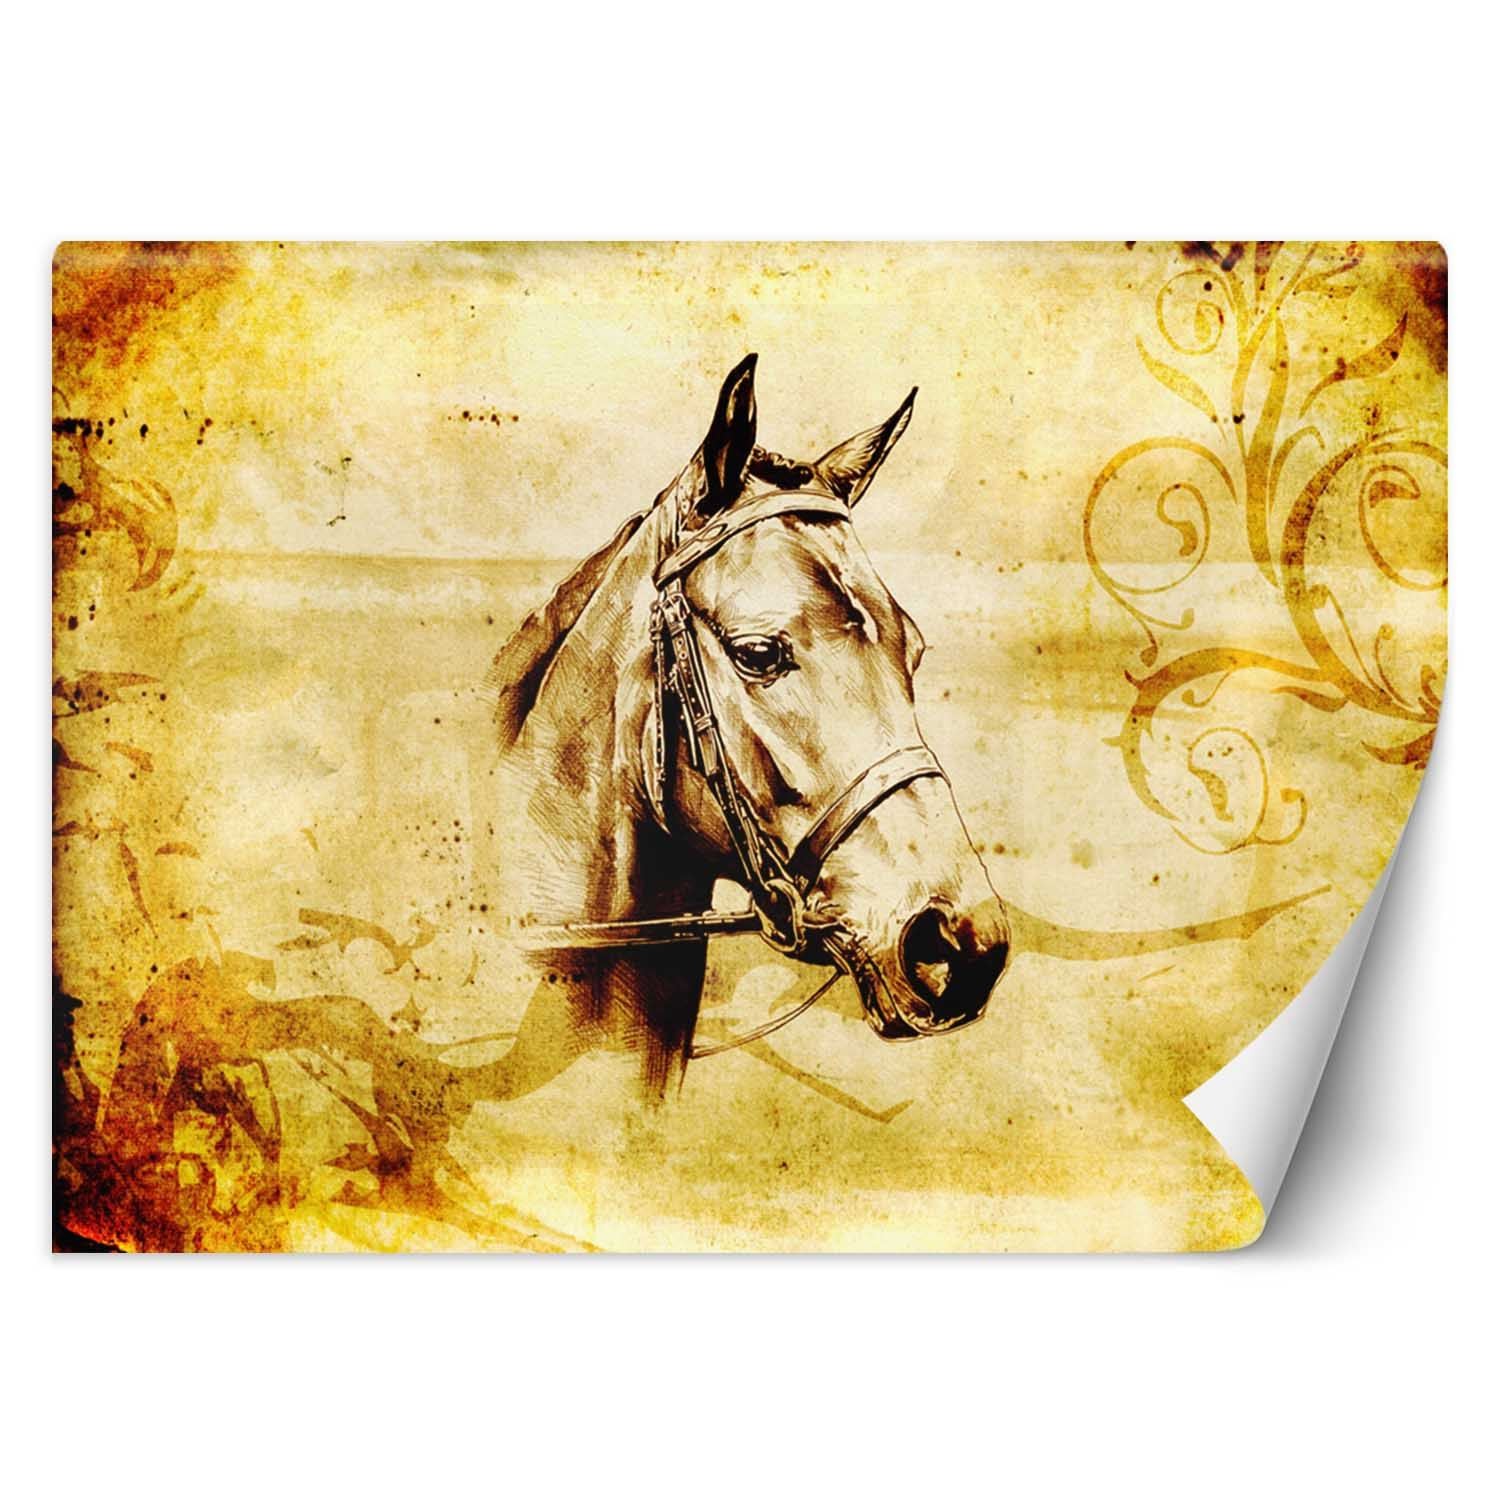 Trend24 – Behang – Schets Van Een Paard – Behangpapier – Fotobehang Dieren – Behang Woonkamer – 450x315x2 cm – Incl. behanglijm